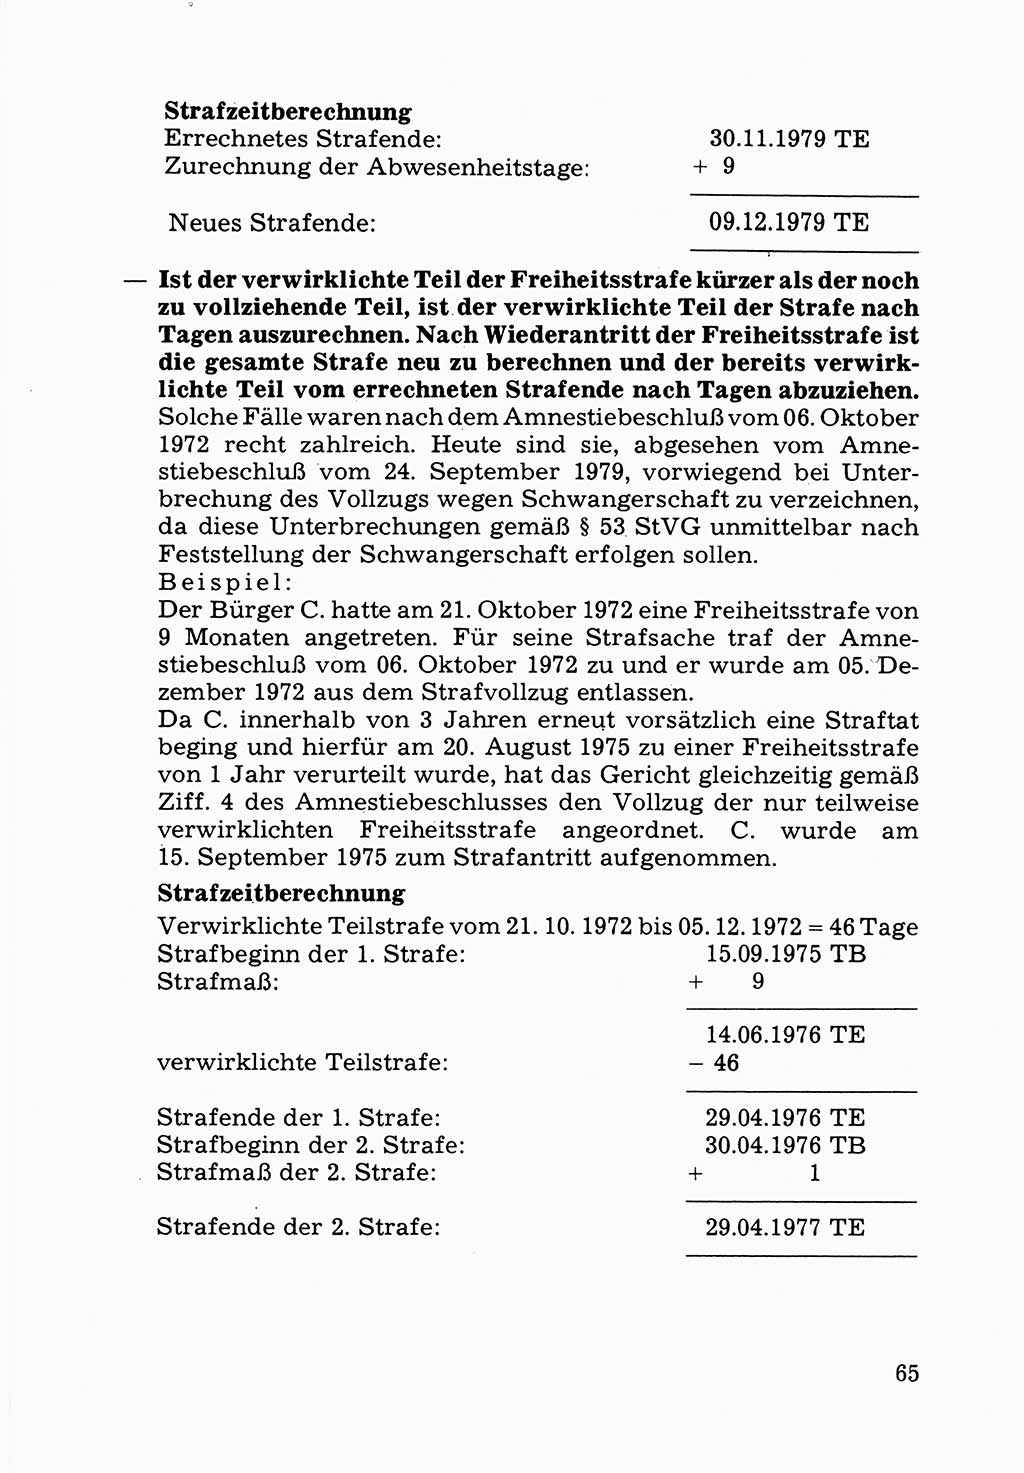 Verwaltungsmäßige Aufgaben beim Vollzug der Untersuchungshaft (U-Haft) sowie der Strafen mit Freiheitsentzug (SV) [Deutsche Demokratische Republik (DDR)] 1980, Seite 65 (Aufg. Vollz. U-Haft SV DDR 1980, S. 65)